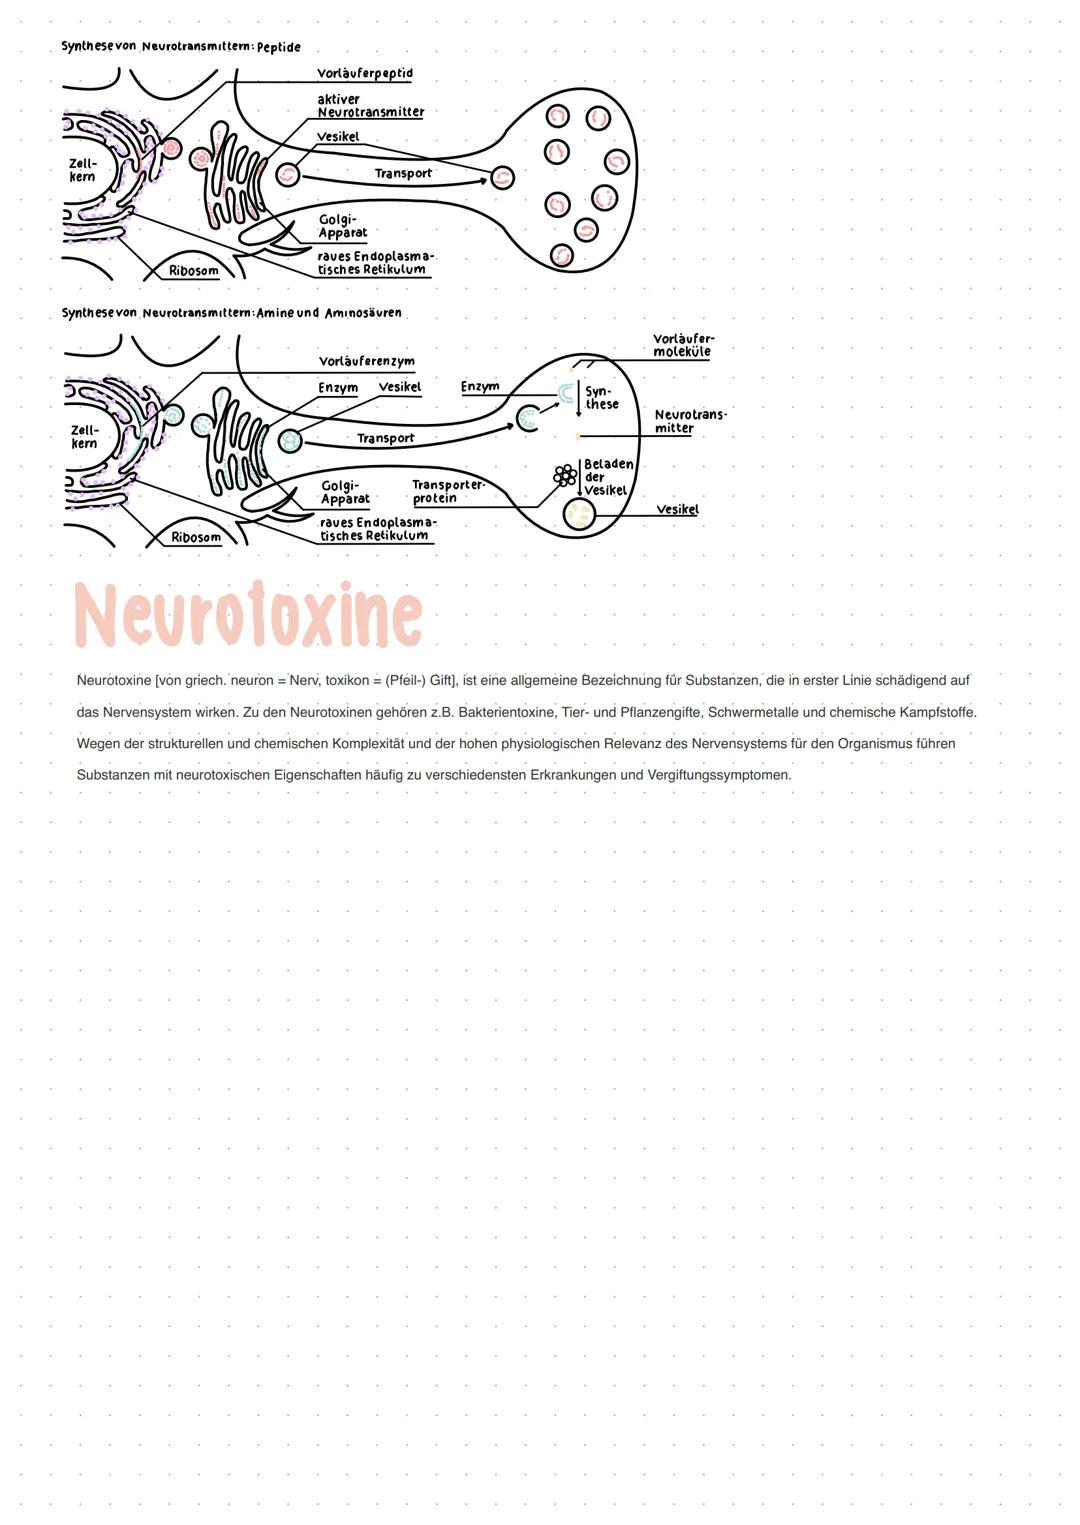 Neuron
GRUNDBAUPLAN DER NEURONEN
- alle Nervenzellen besitzen eine Leistungsstrecke, eine Rezeptorzone und eine Effektorzone
- sie haben ein